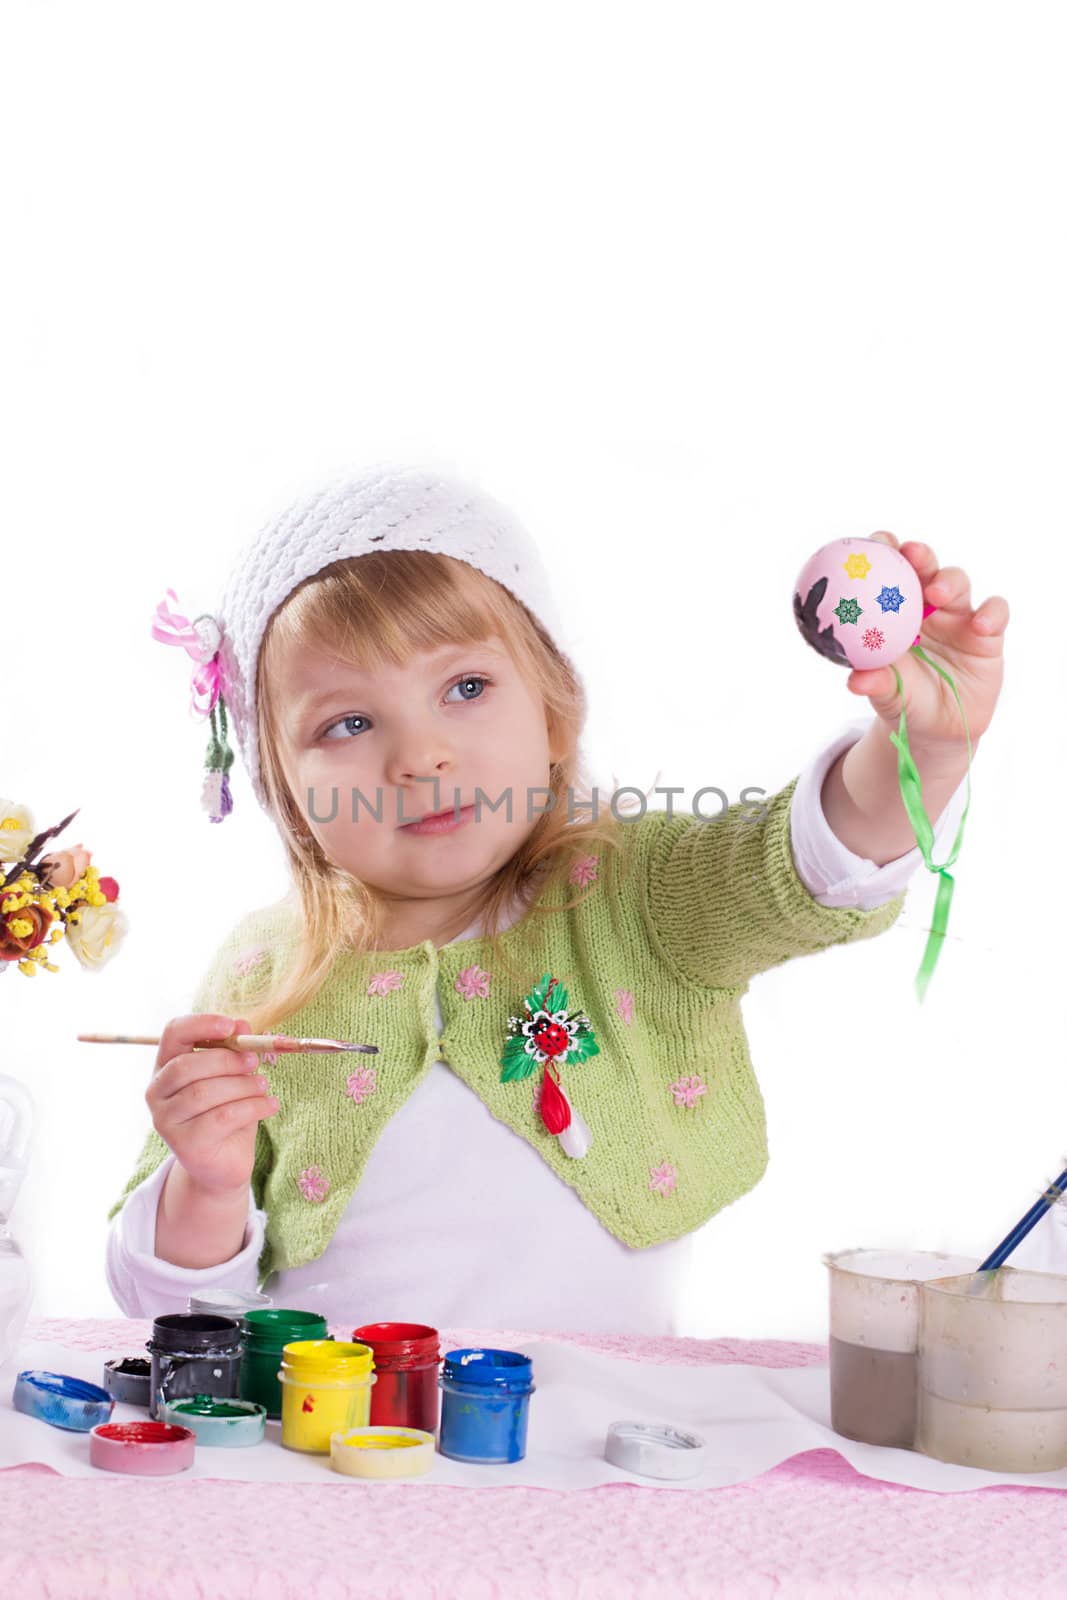 Little girl decorating easter eggs over white